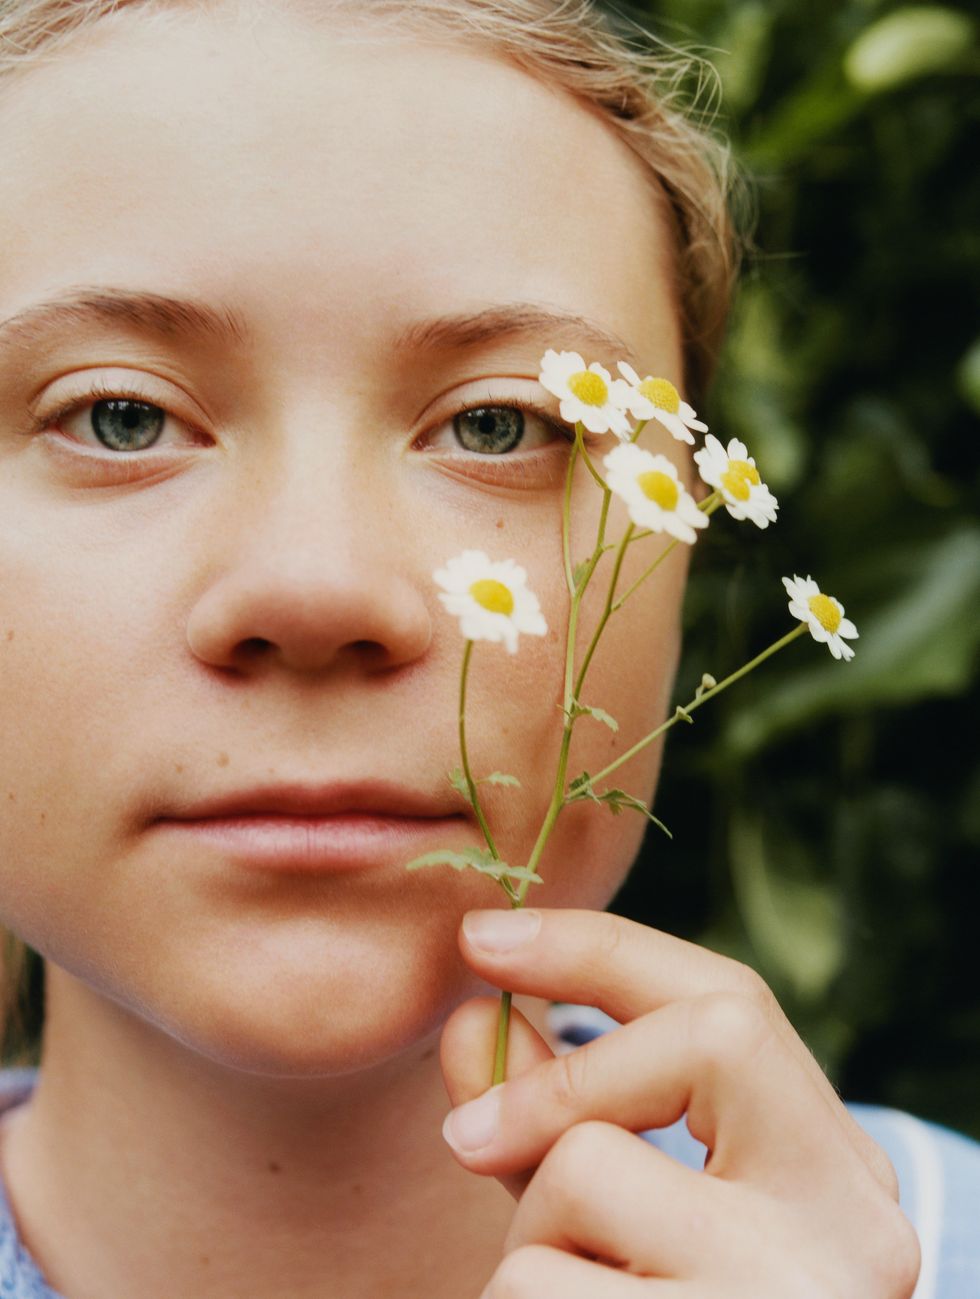 Nhà hoạt động vì môi trường Greta Thunberg